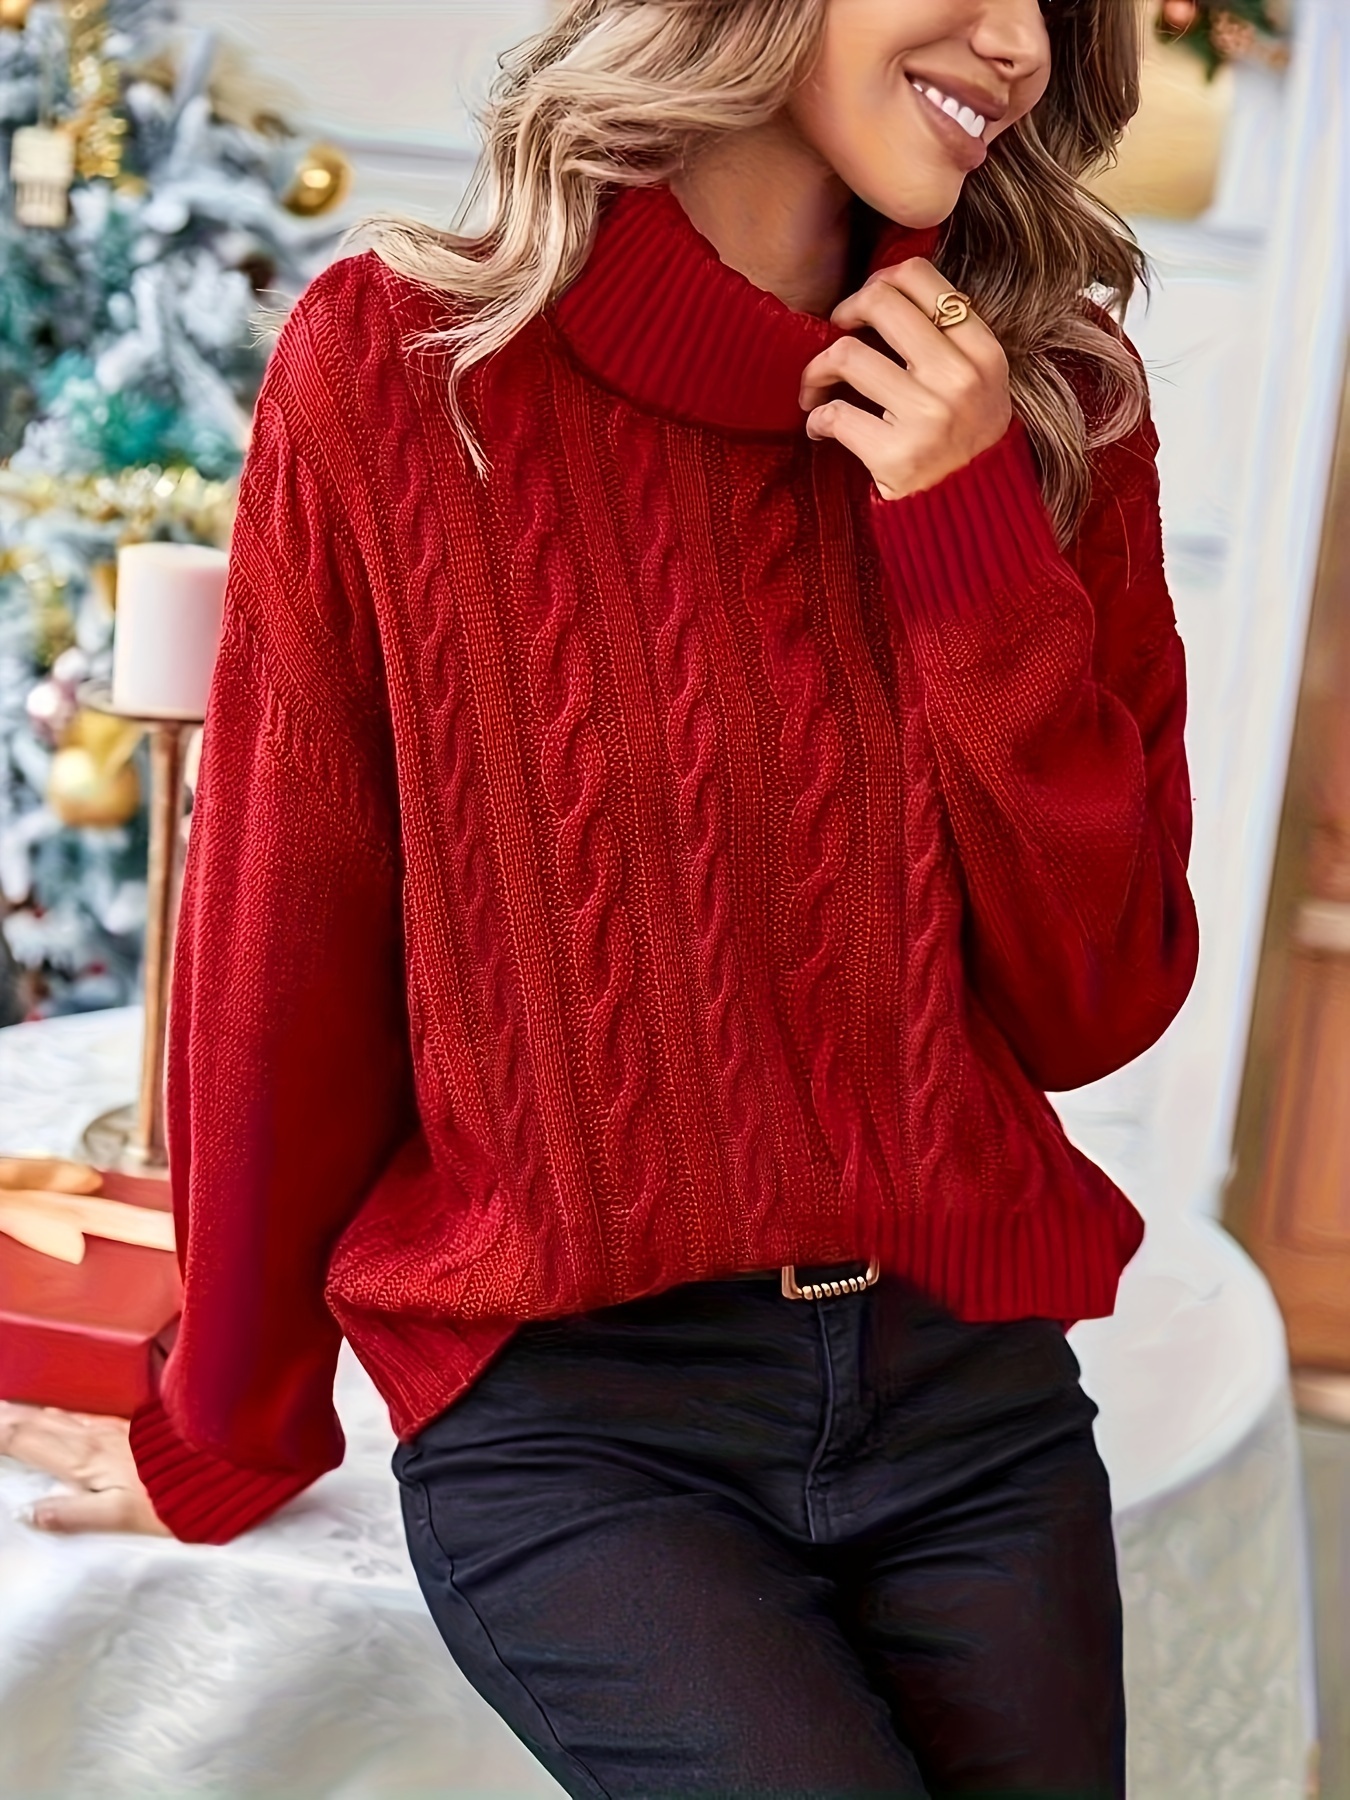 Womens Knitted Tops, Knitwear Sweater & Turtleneck Sweater